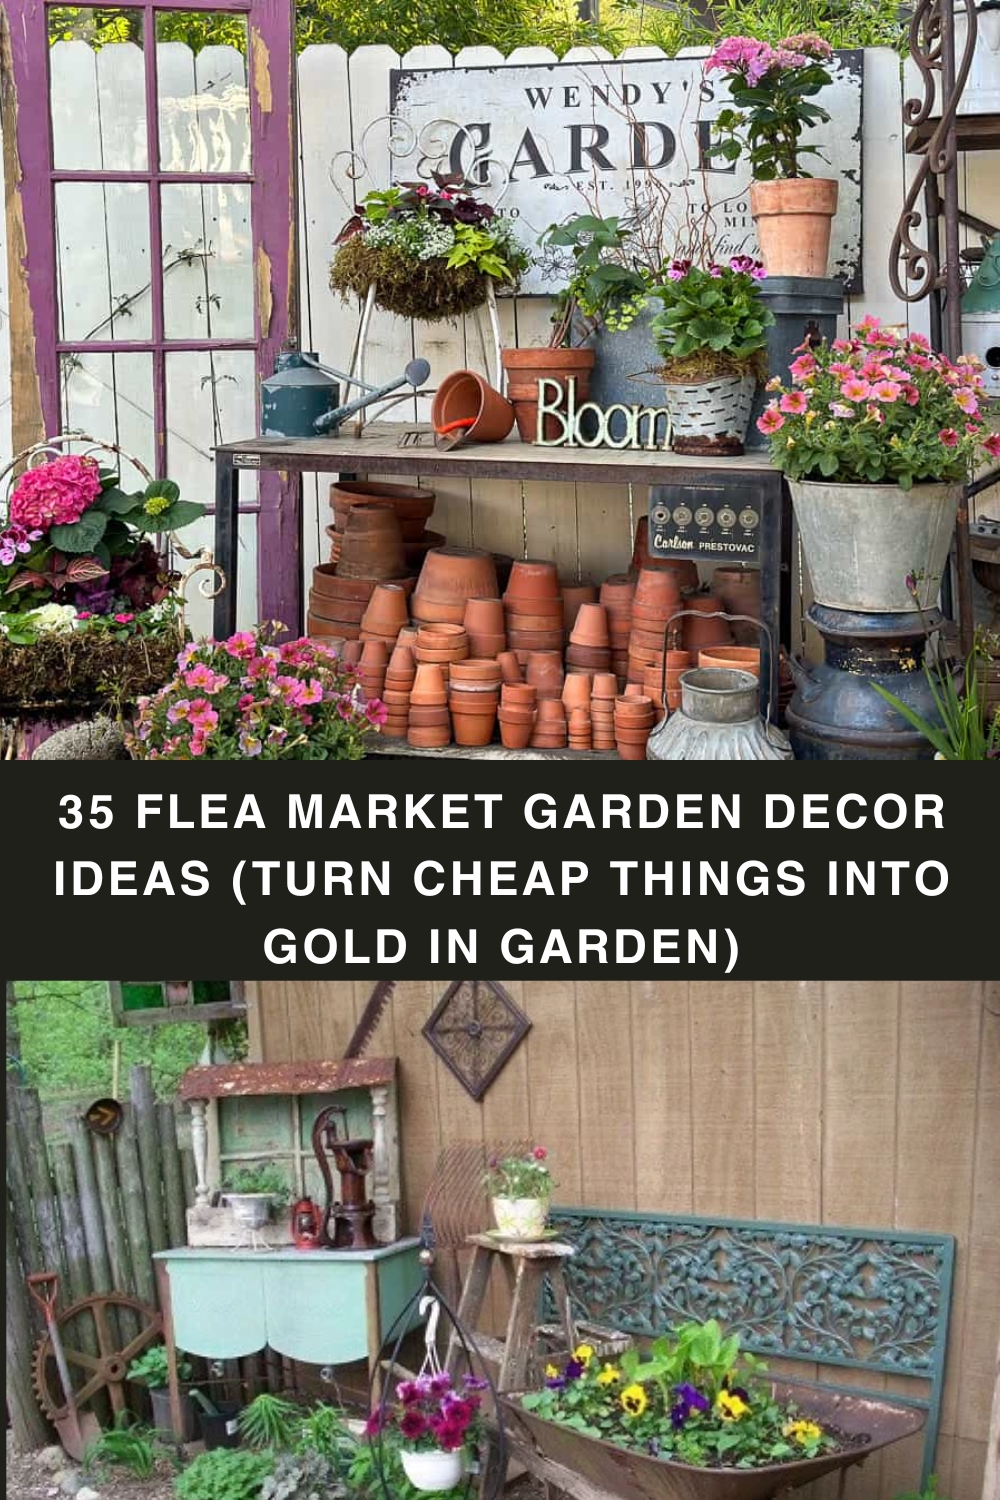 35 Flea Market Garden Decor Ideas (Turn Cheap Things into Gold in Garden) pin